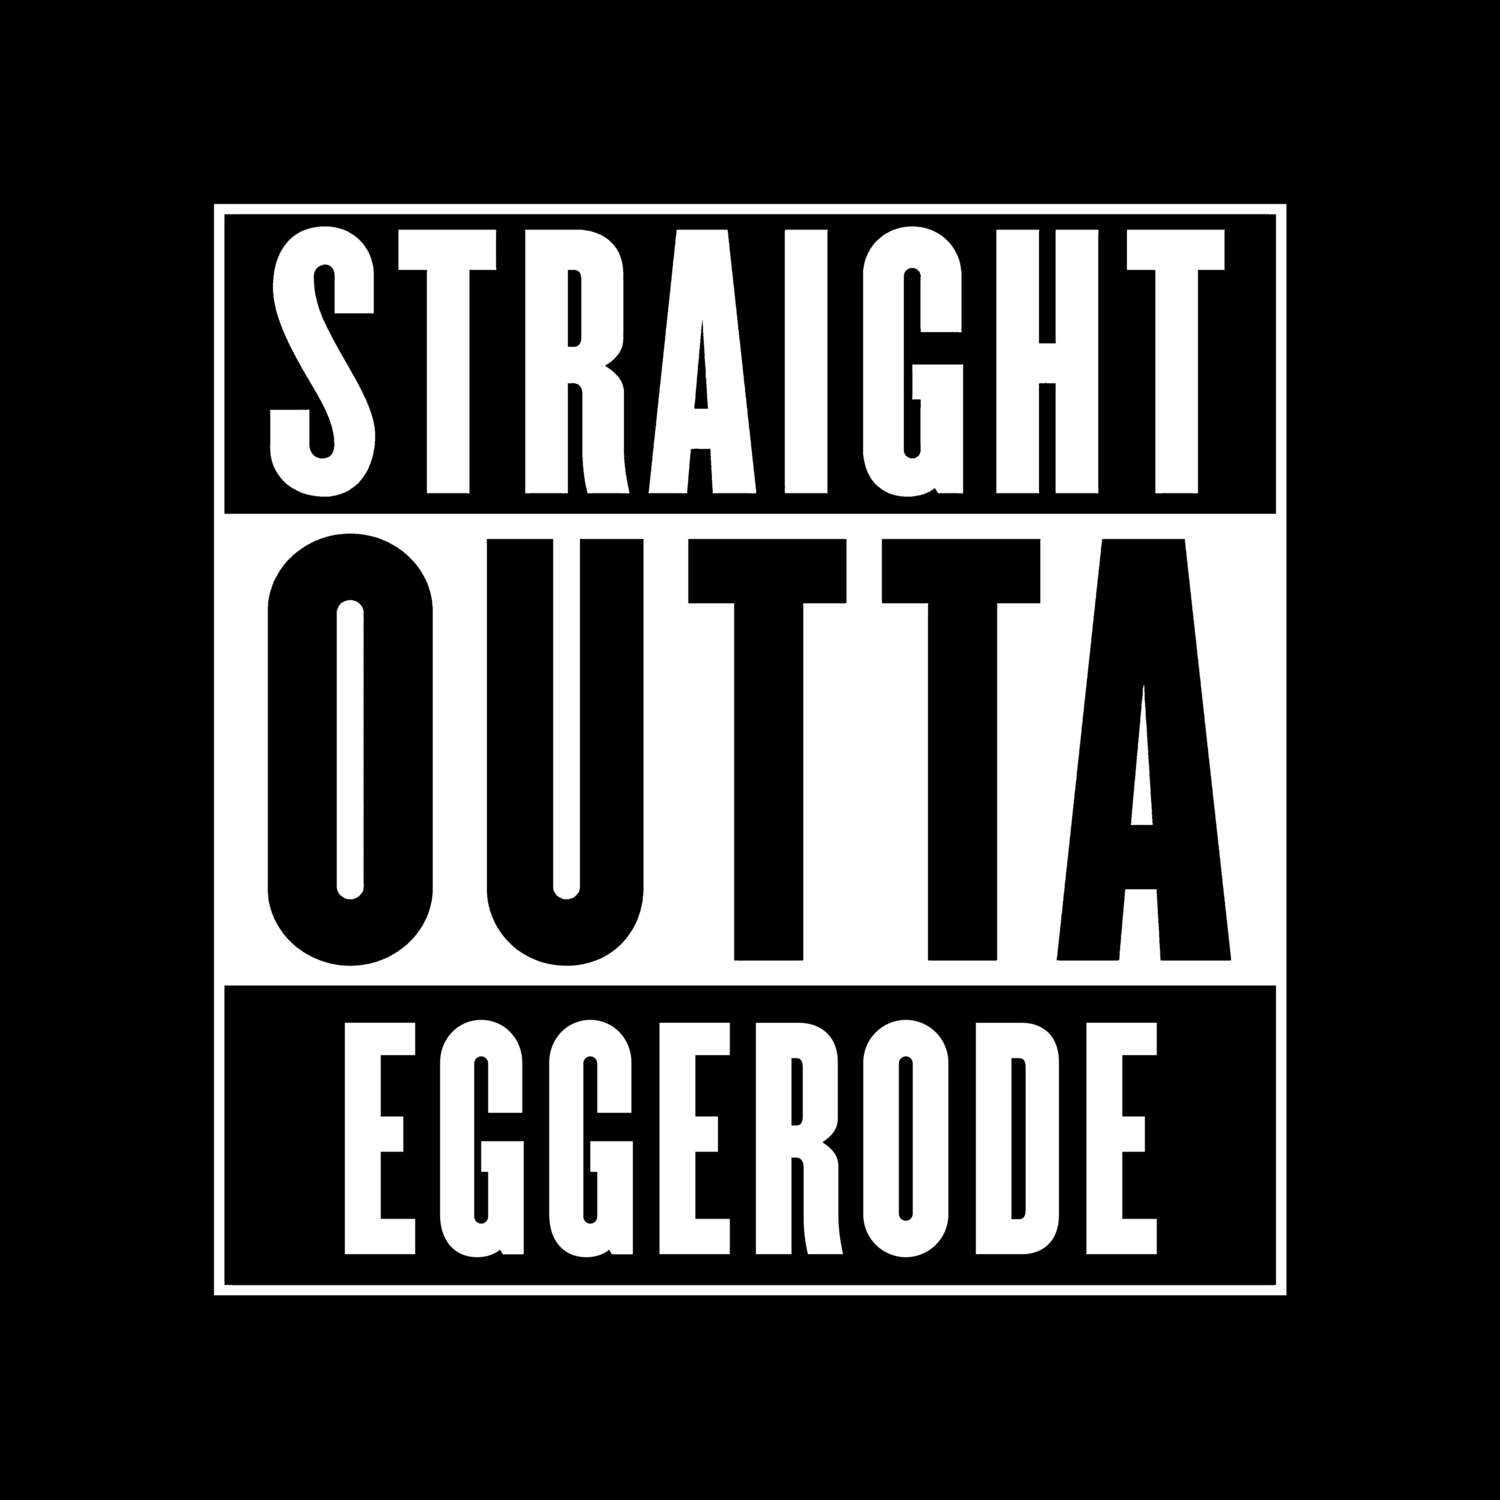 Eggerode T-Shirt »Straight Outta«